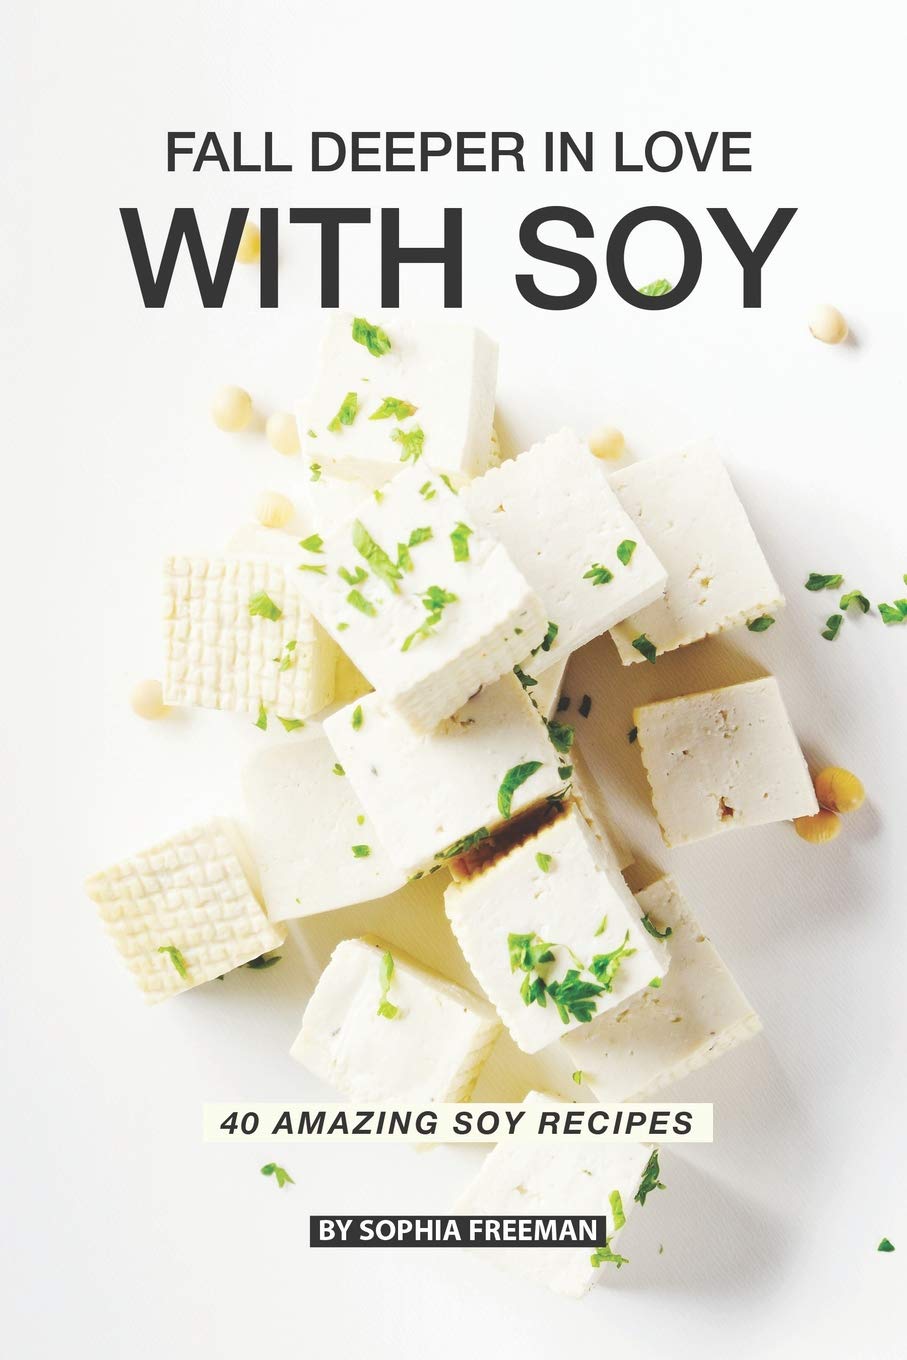 40 Amazing Soy Recipes